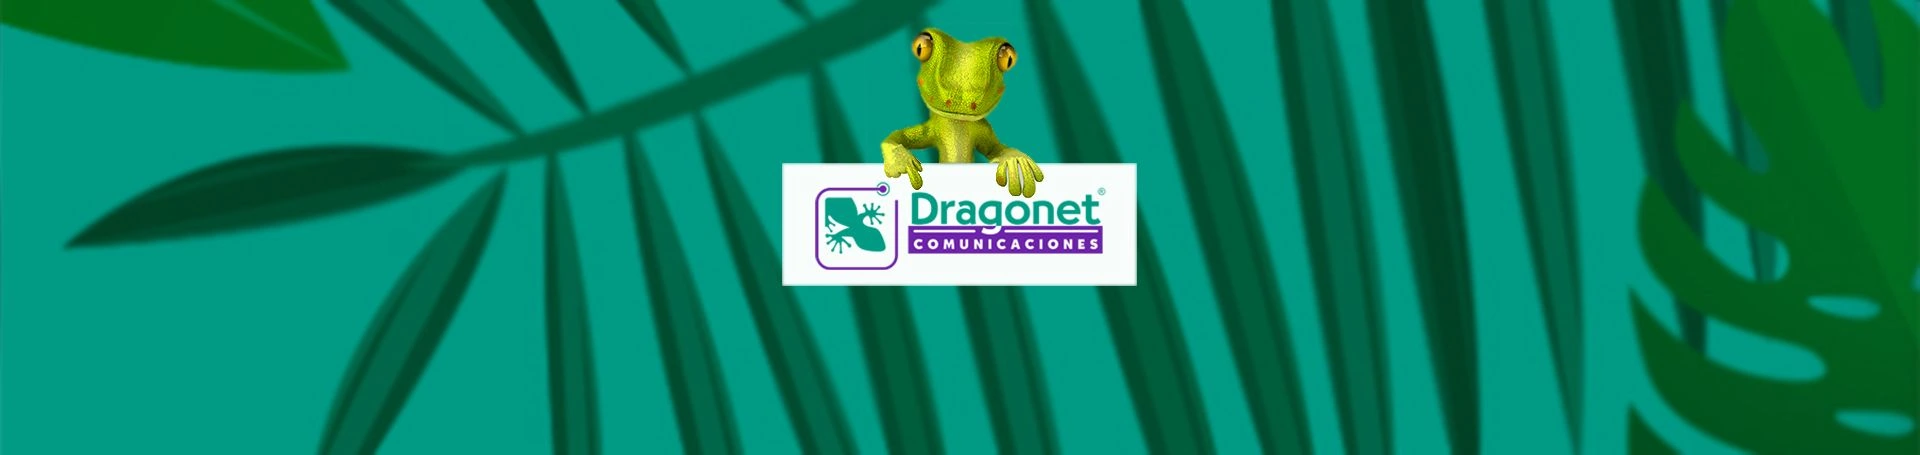 Dragonet Comunicaciones, nueva página web en Valencia.